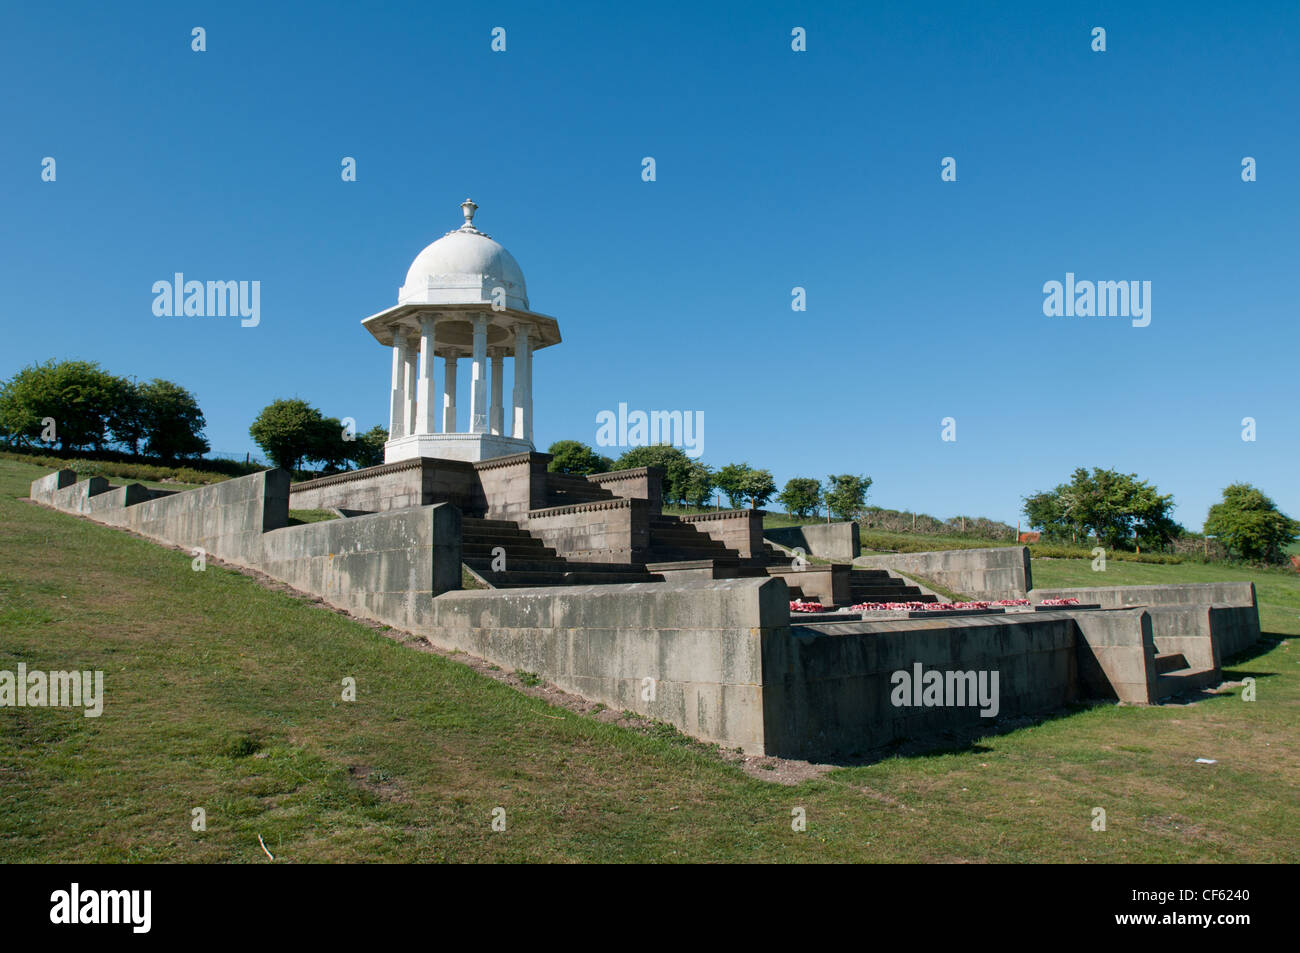 L'Chattri, un monument situé dans les South Downs dédié à la mémoire de l'Indien soldats qui sont morts dans la Première Guerre mondiale. Banque D'Images